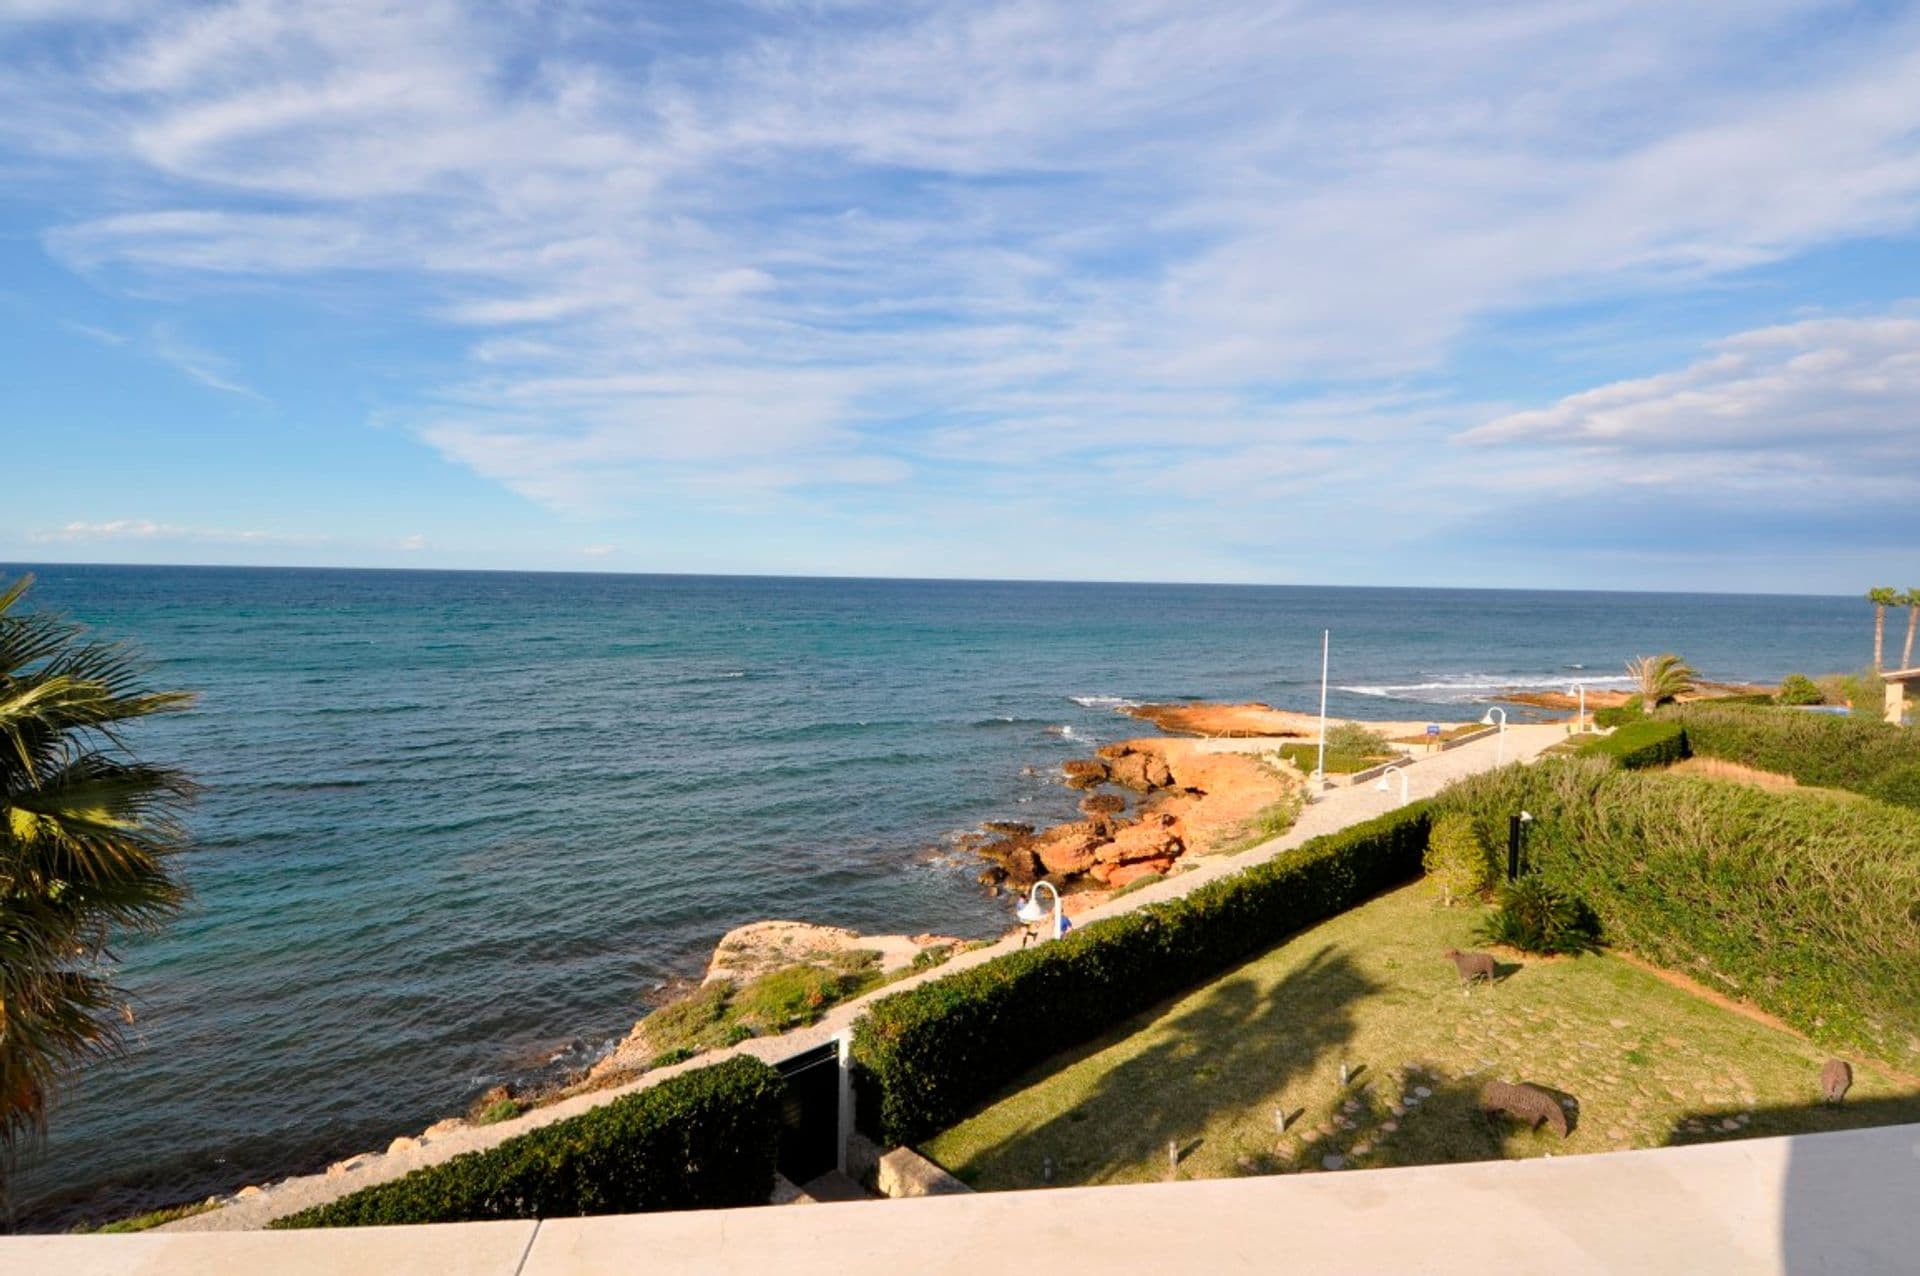 Villa mit modernem Design und einer exquisiten Aussicht auf das Meer in Dénia.